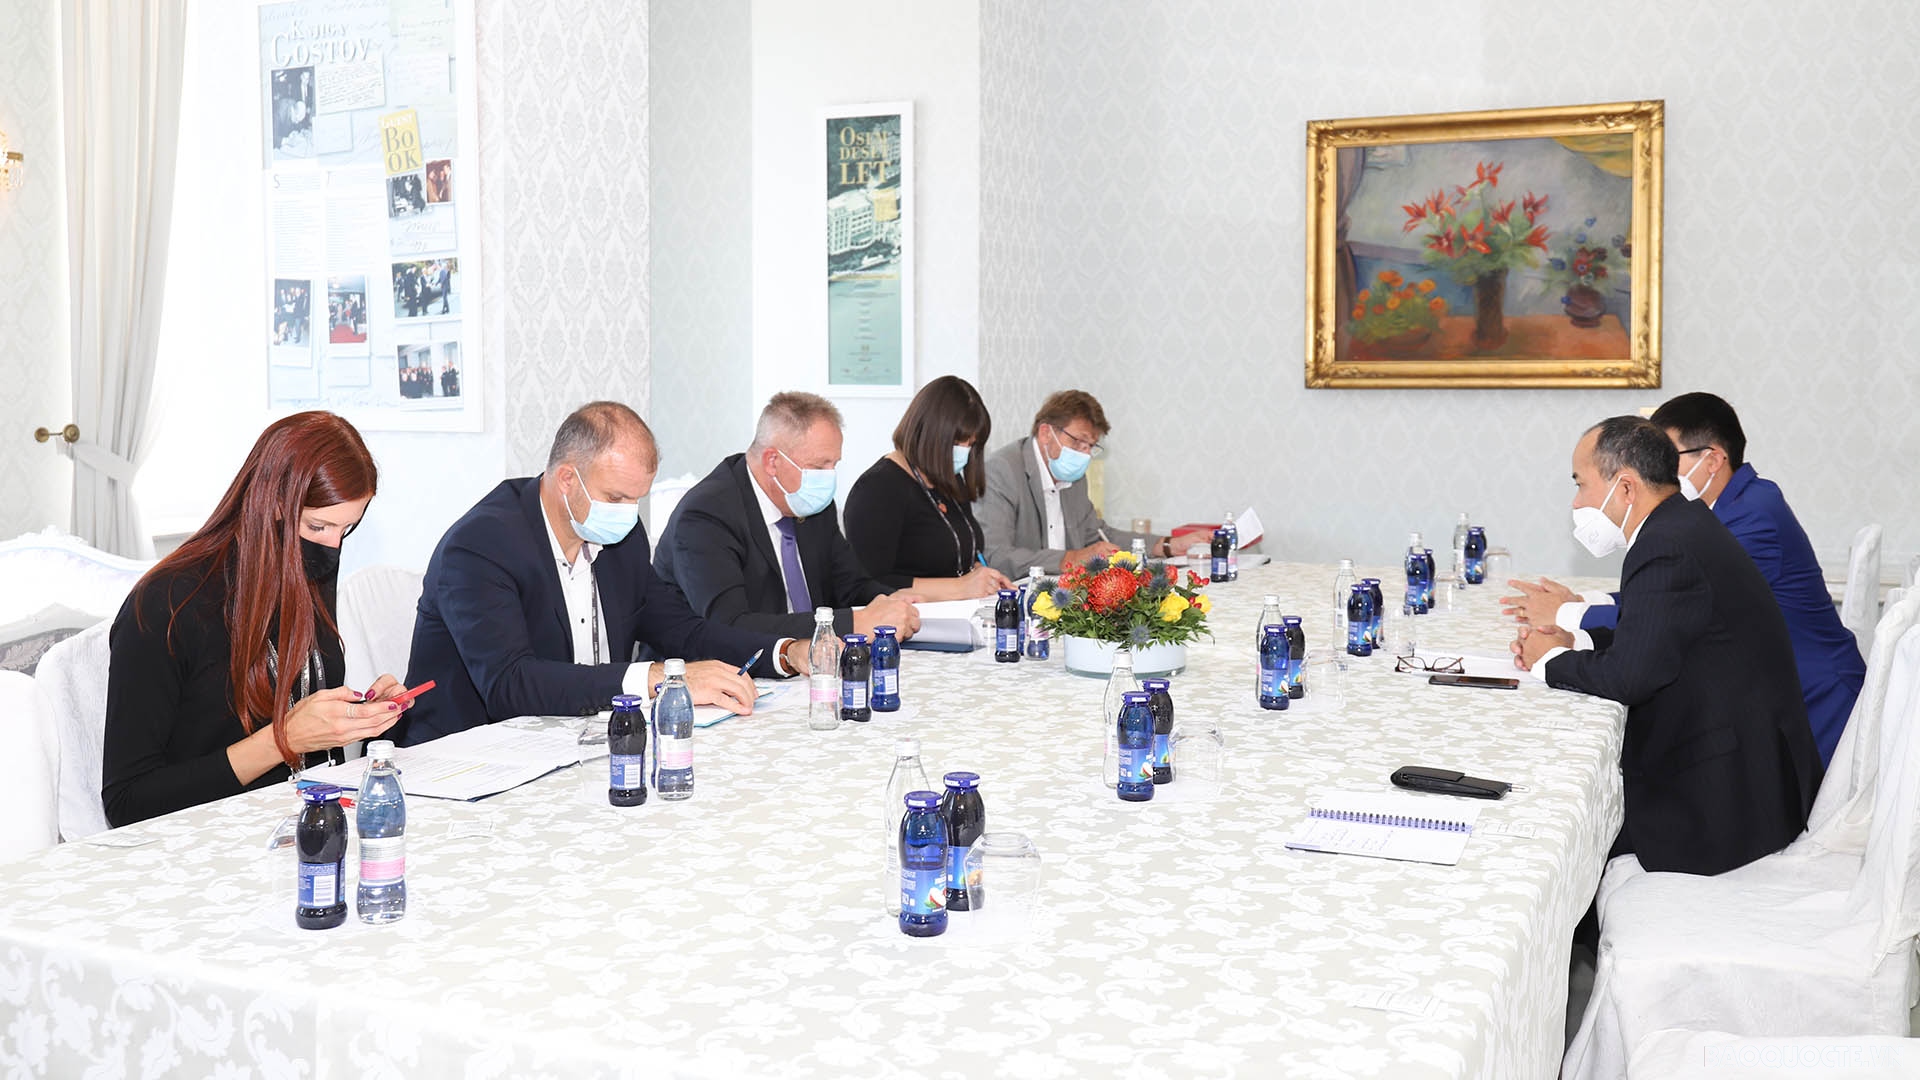 Đại sứ Nguyễn Trung Kiên làm việc với Phó Thủ tướng, Bộ trưởng Bộ Kinh tế và Kỹ thuật Slovenia Zdravko Počivalšek cùng Chủ tịch Phòng Thương mại Slovenia Aleš Cantarutti.